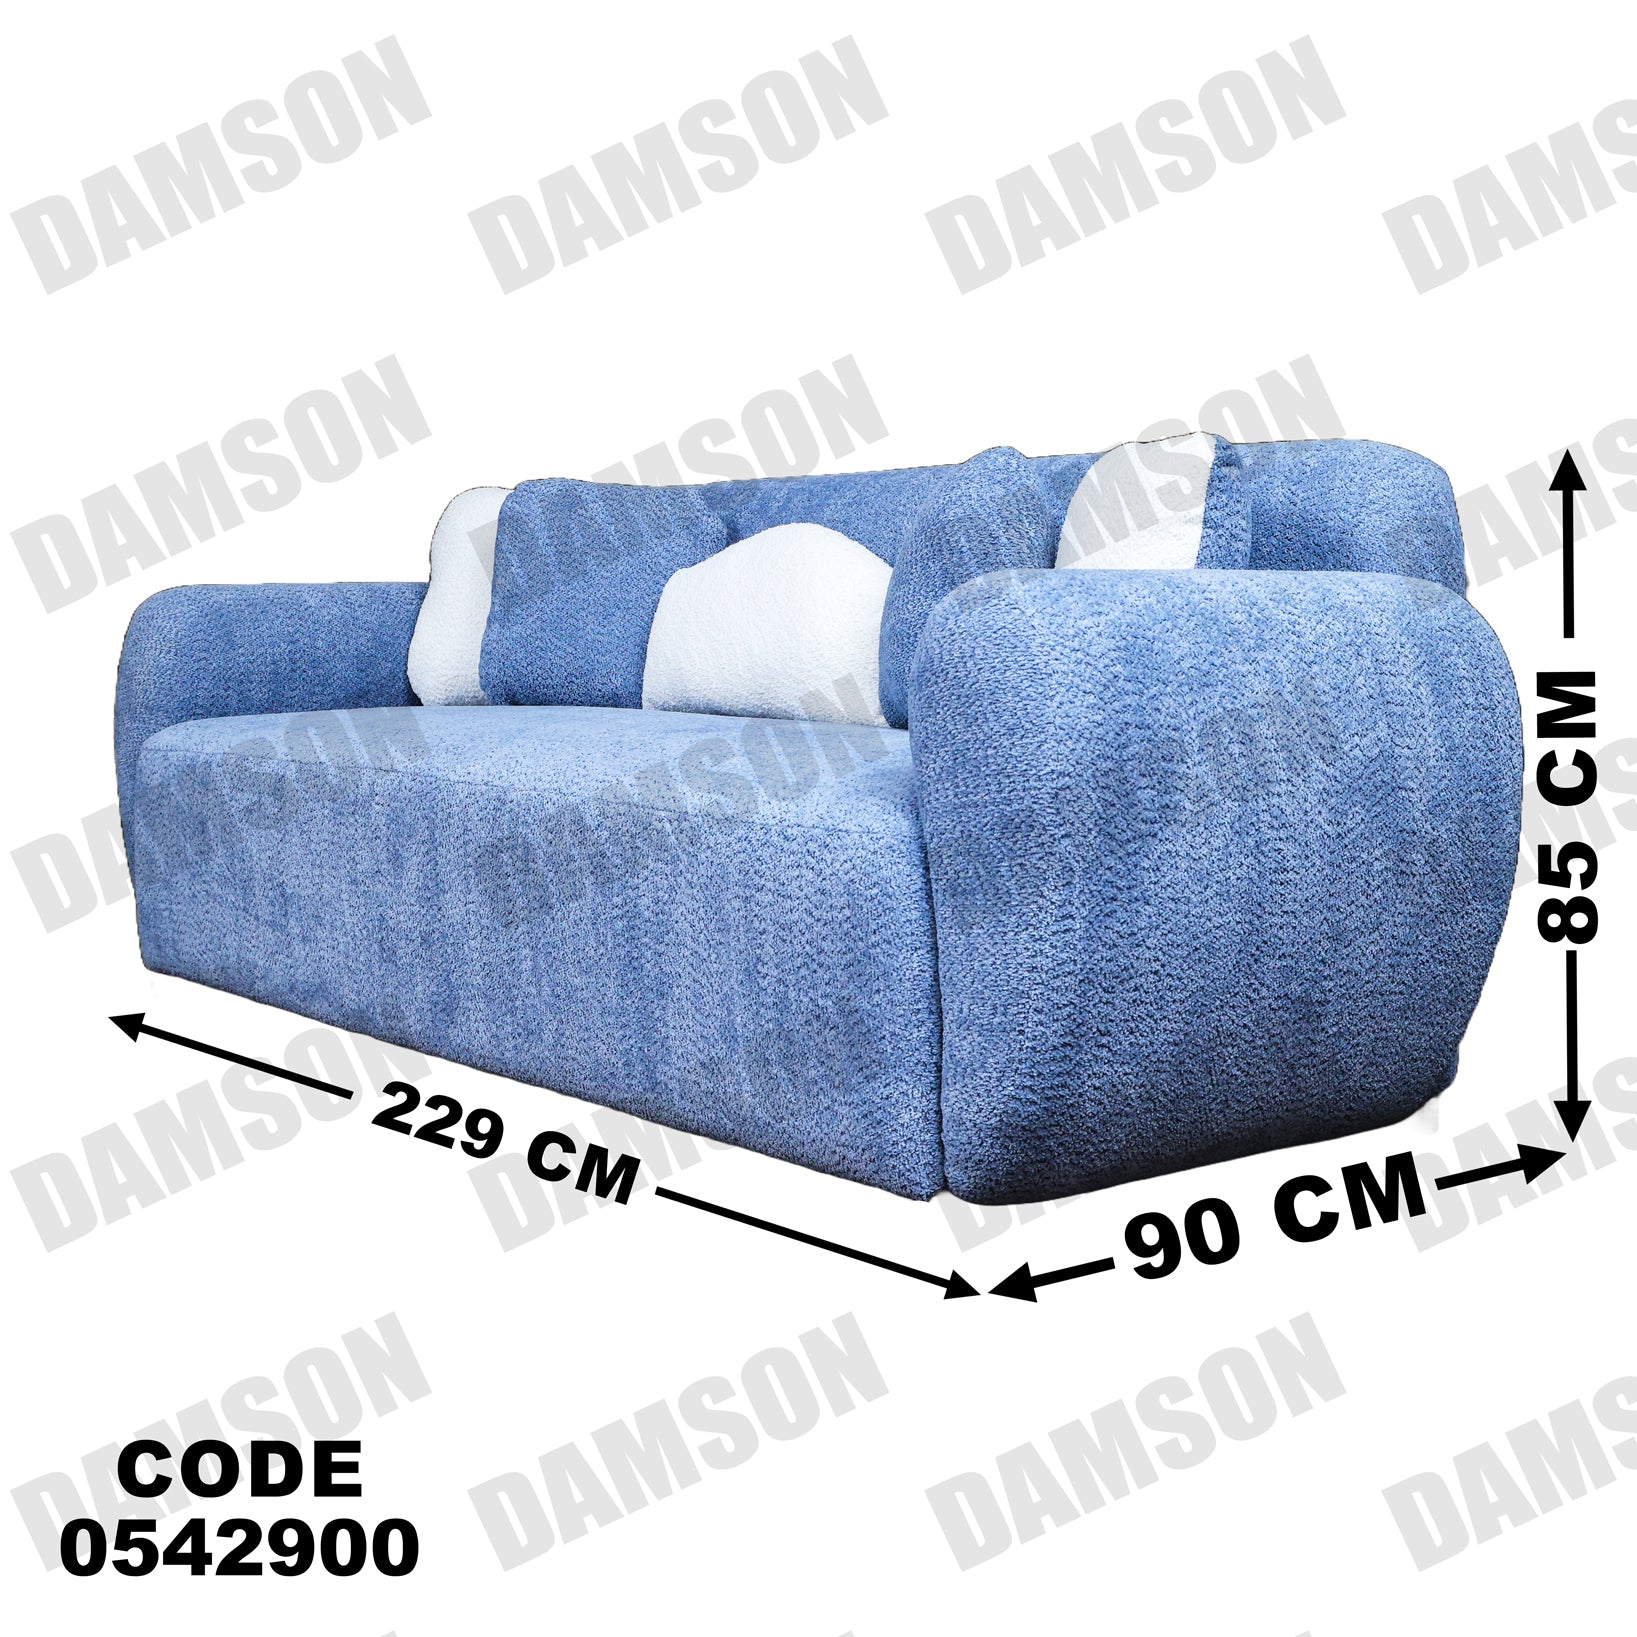 انترية 429 - Damson Furnitureانترية 429